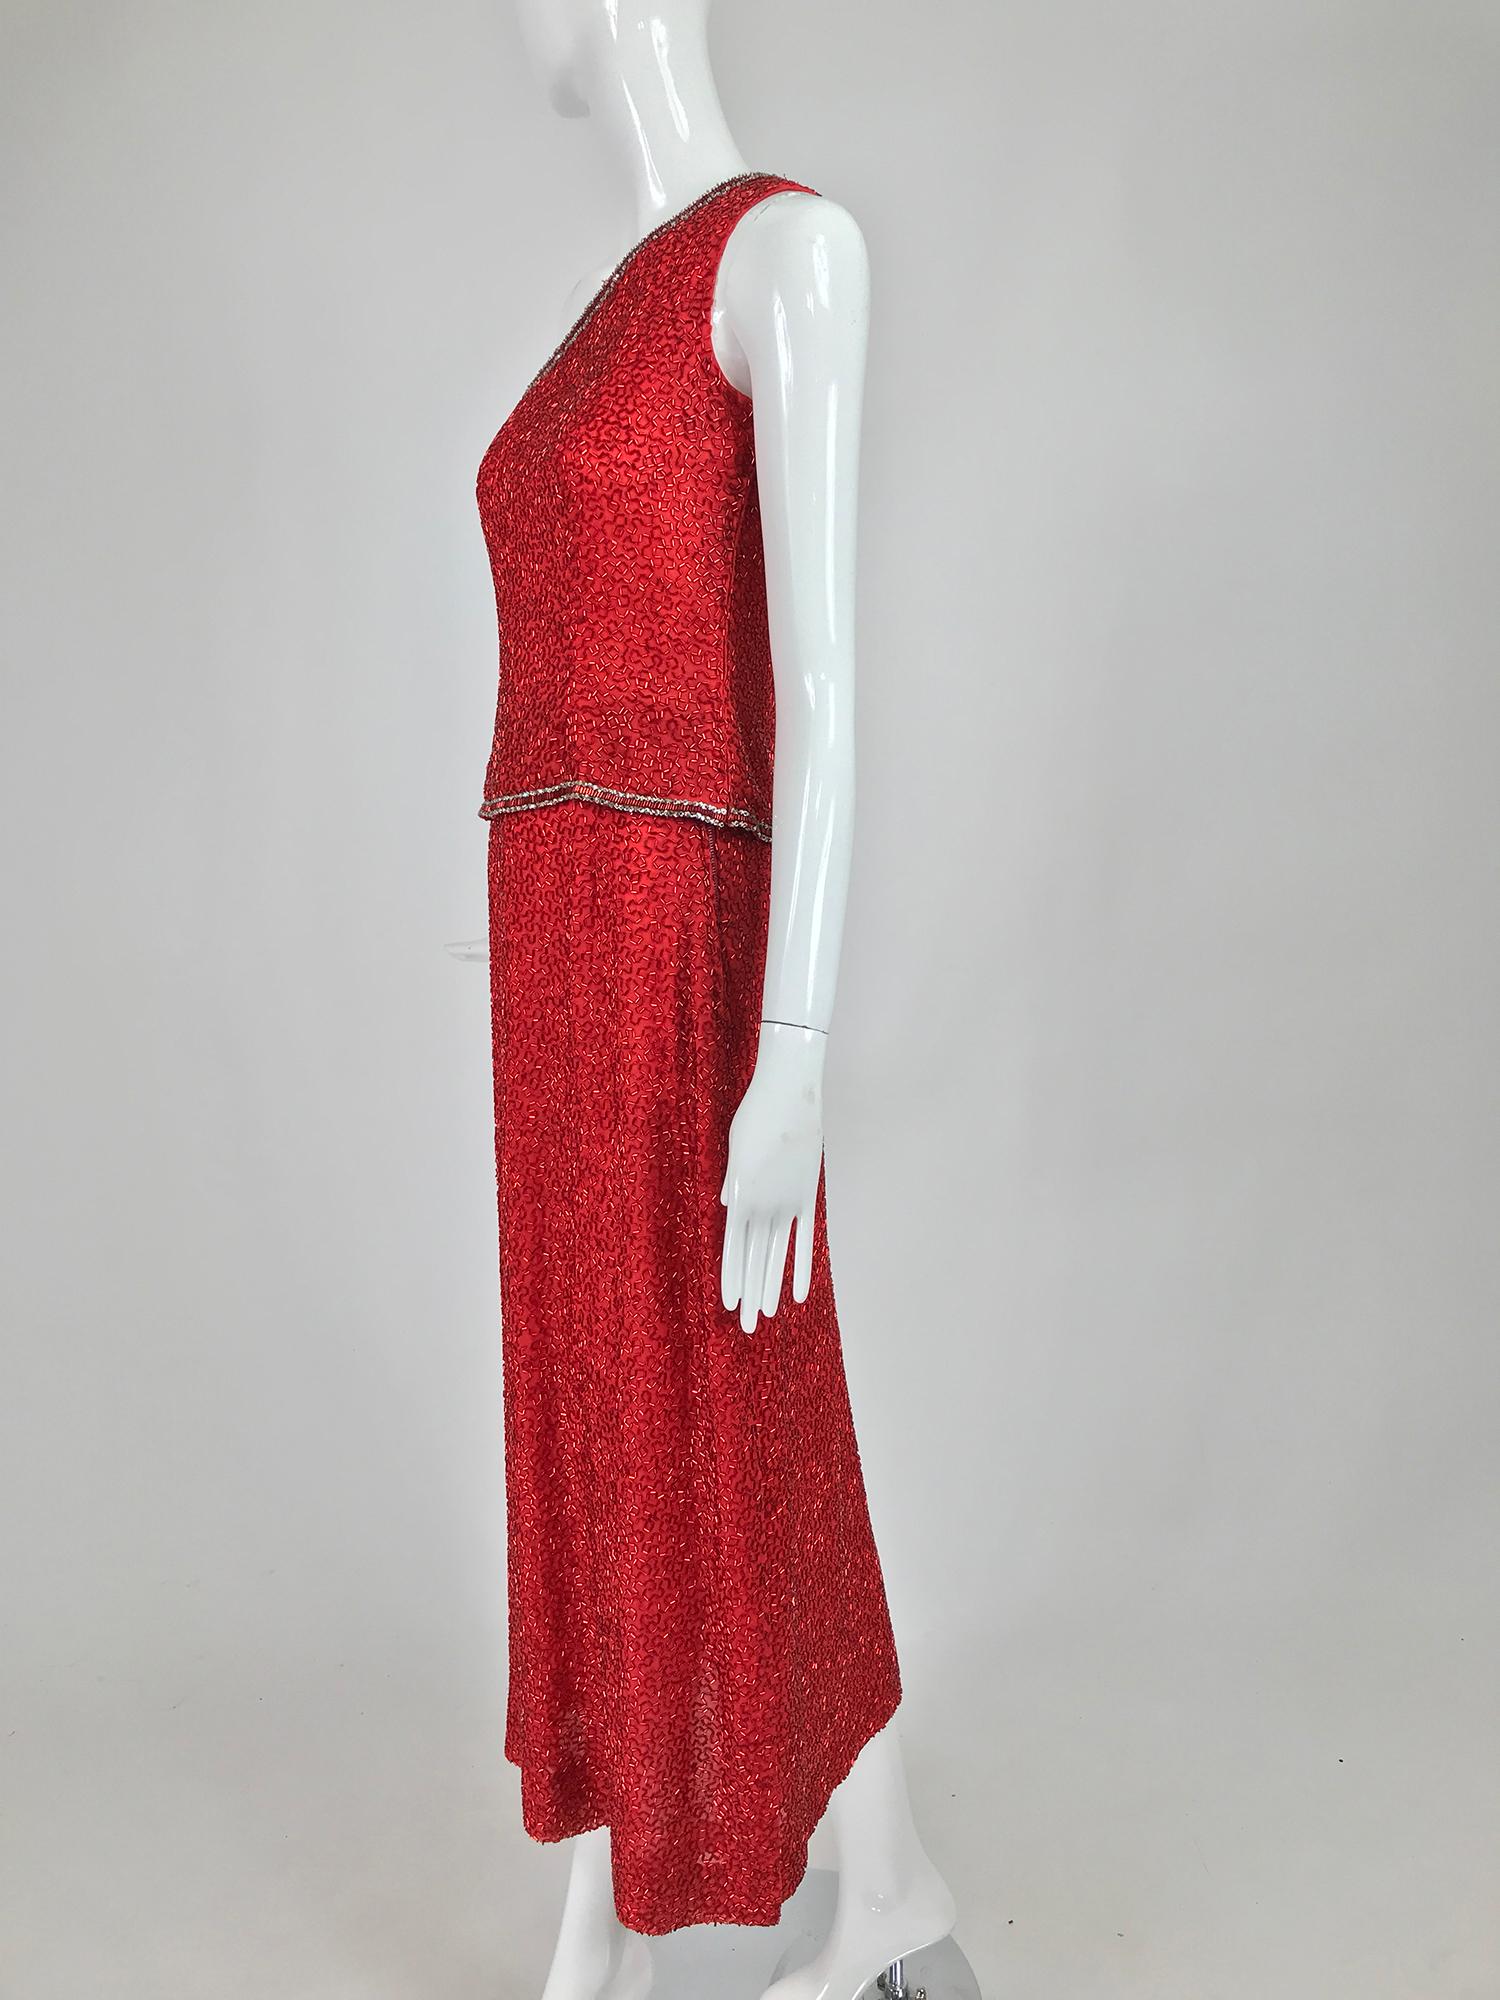 Victoria Royal feuerwehrrotes, perlenbesetztes, zweiteiliges, einschulteriges Abendkleid aus den 1960er Jahren. Dieses schöne Set ist mit roten Glasrohrperlen in einem interessanten Design versehen. Das schulterfreie Oberteil ist am Hals und am Saum